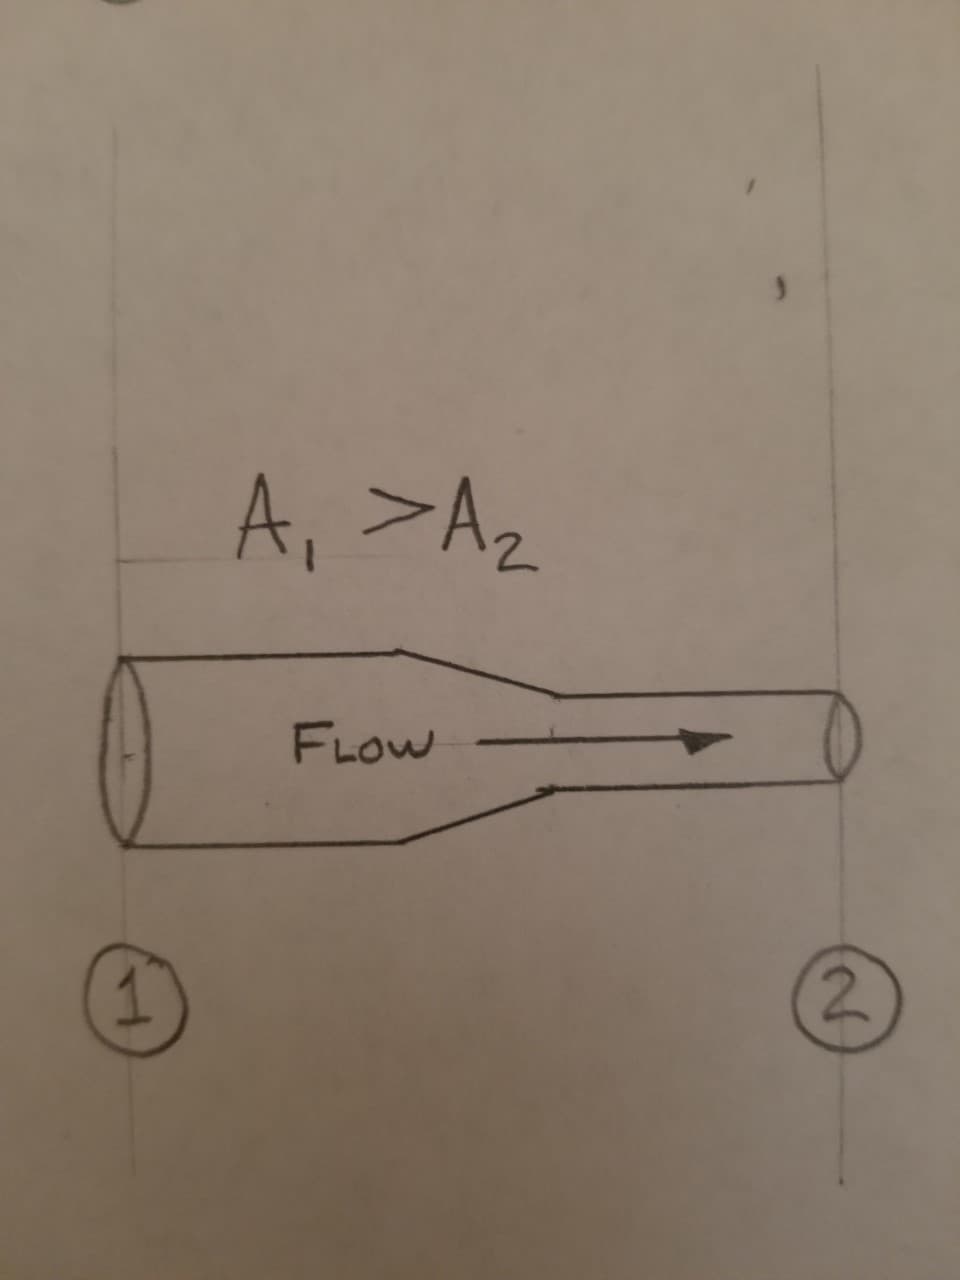 A, >Az
FLOW
2.
